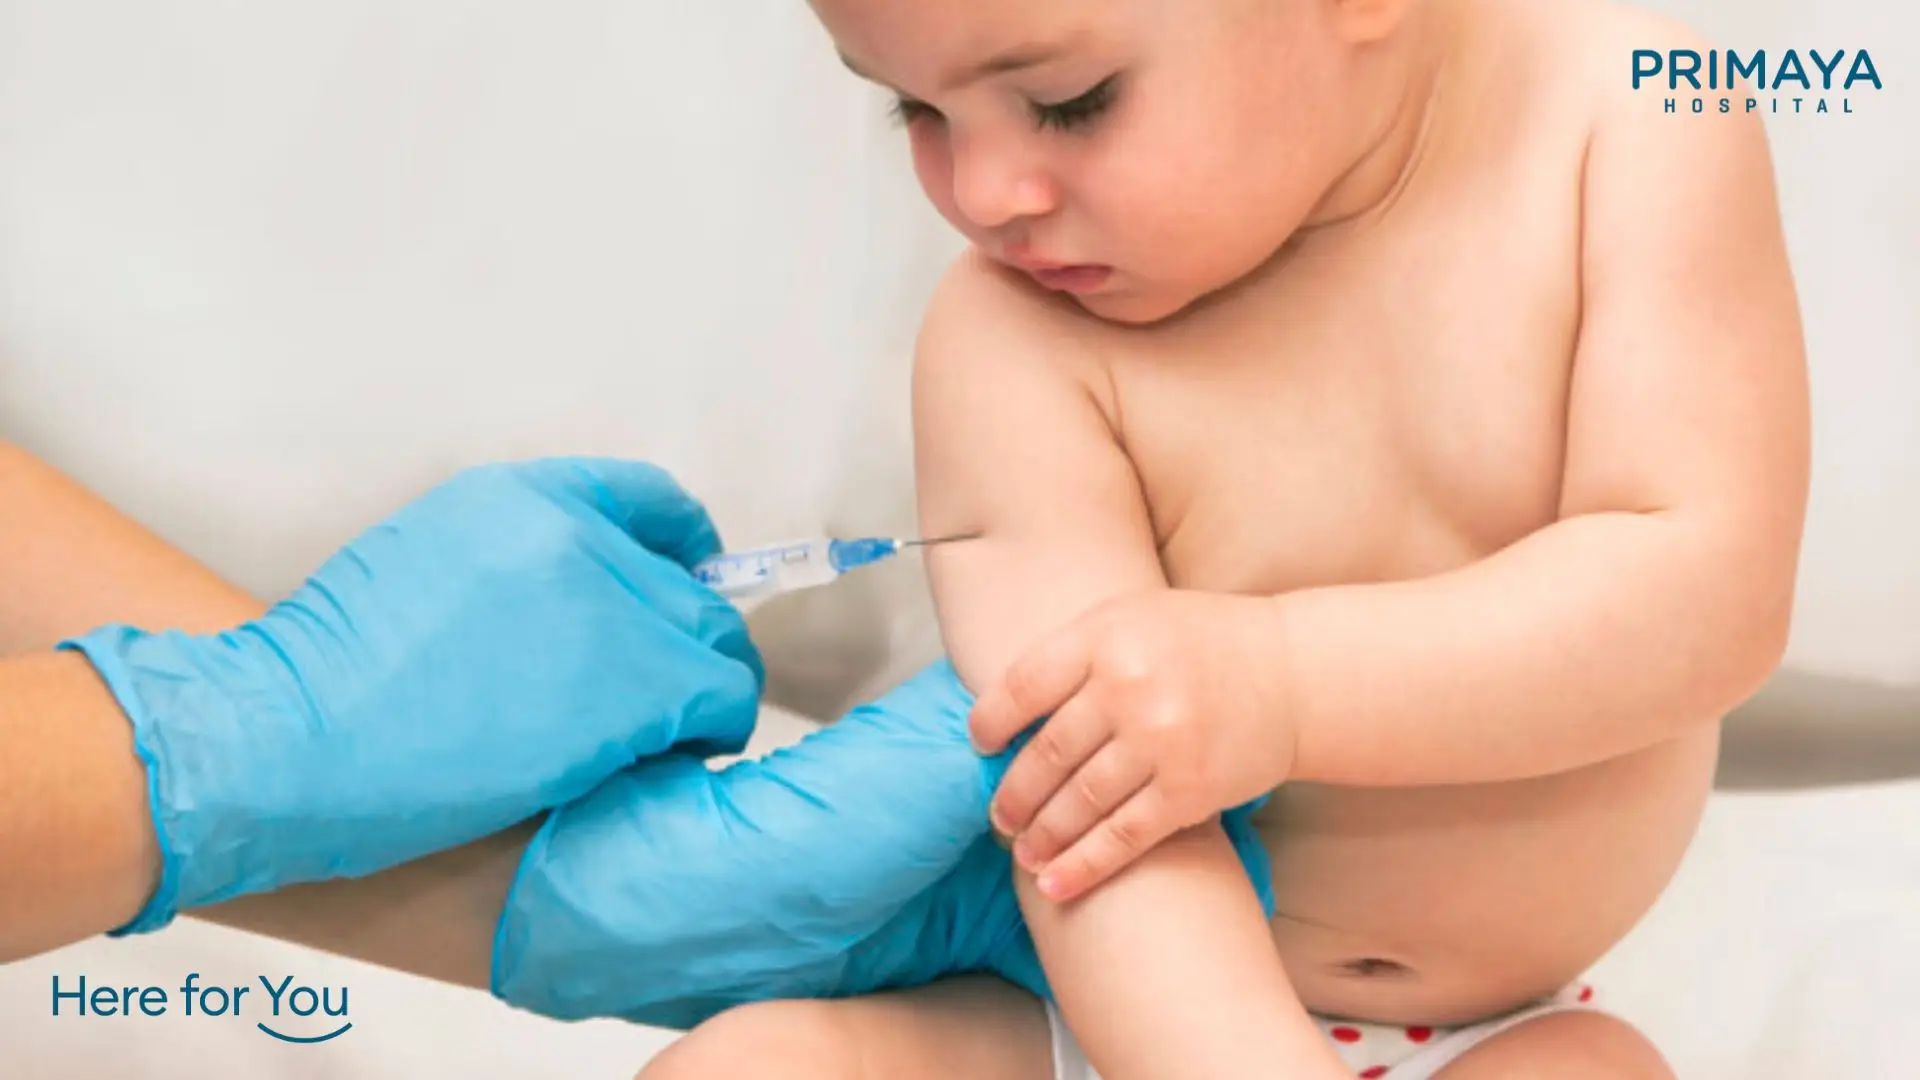 Imunisasi Dasar BCG, Manfaat, dan Kapan Vaksin BCG Dilakukan - Primaya  Hospital